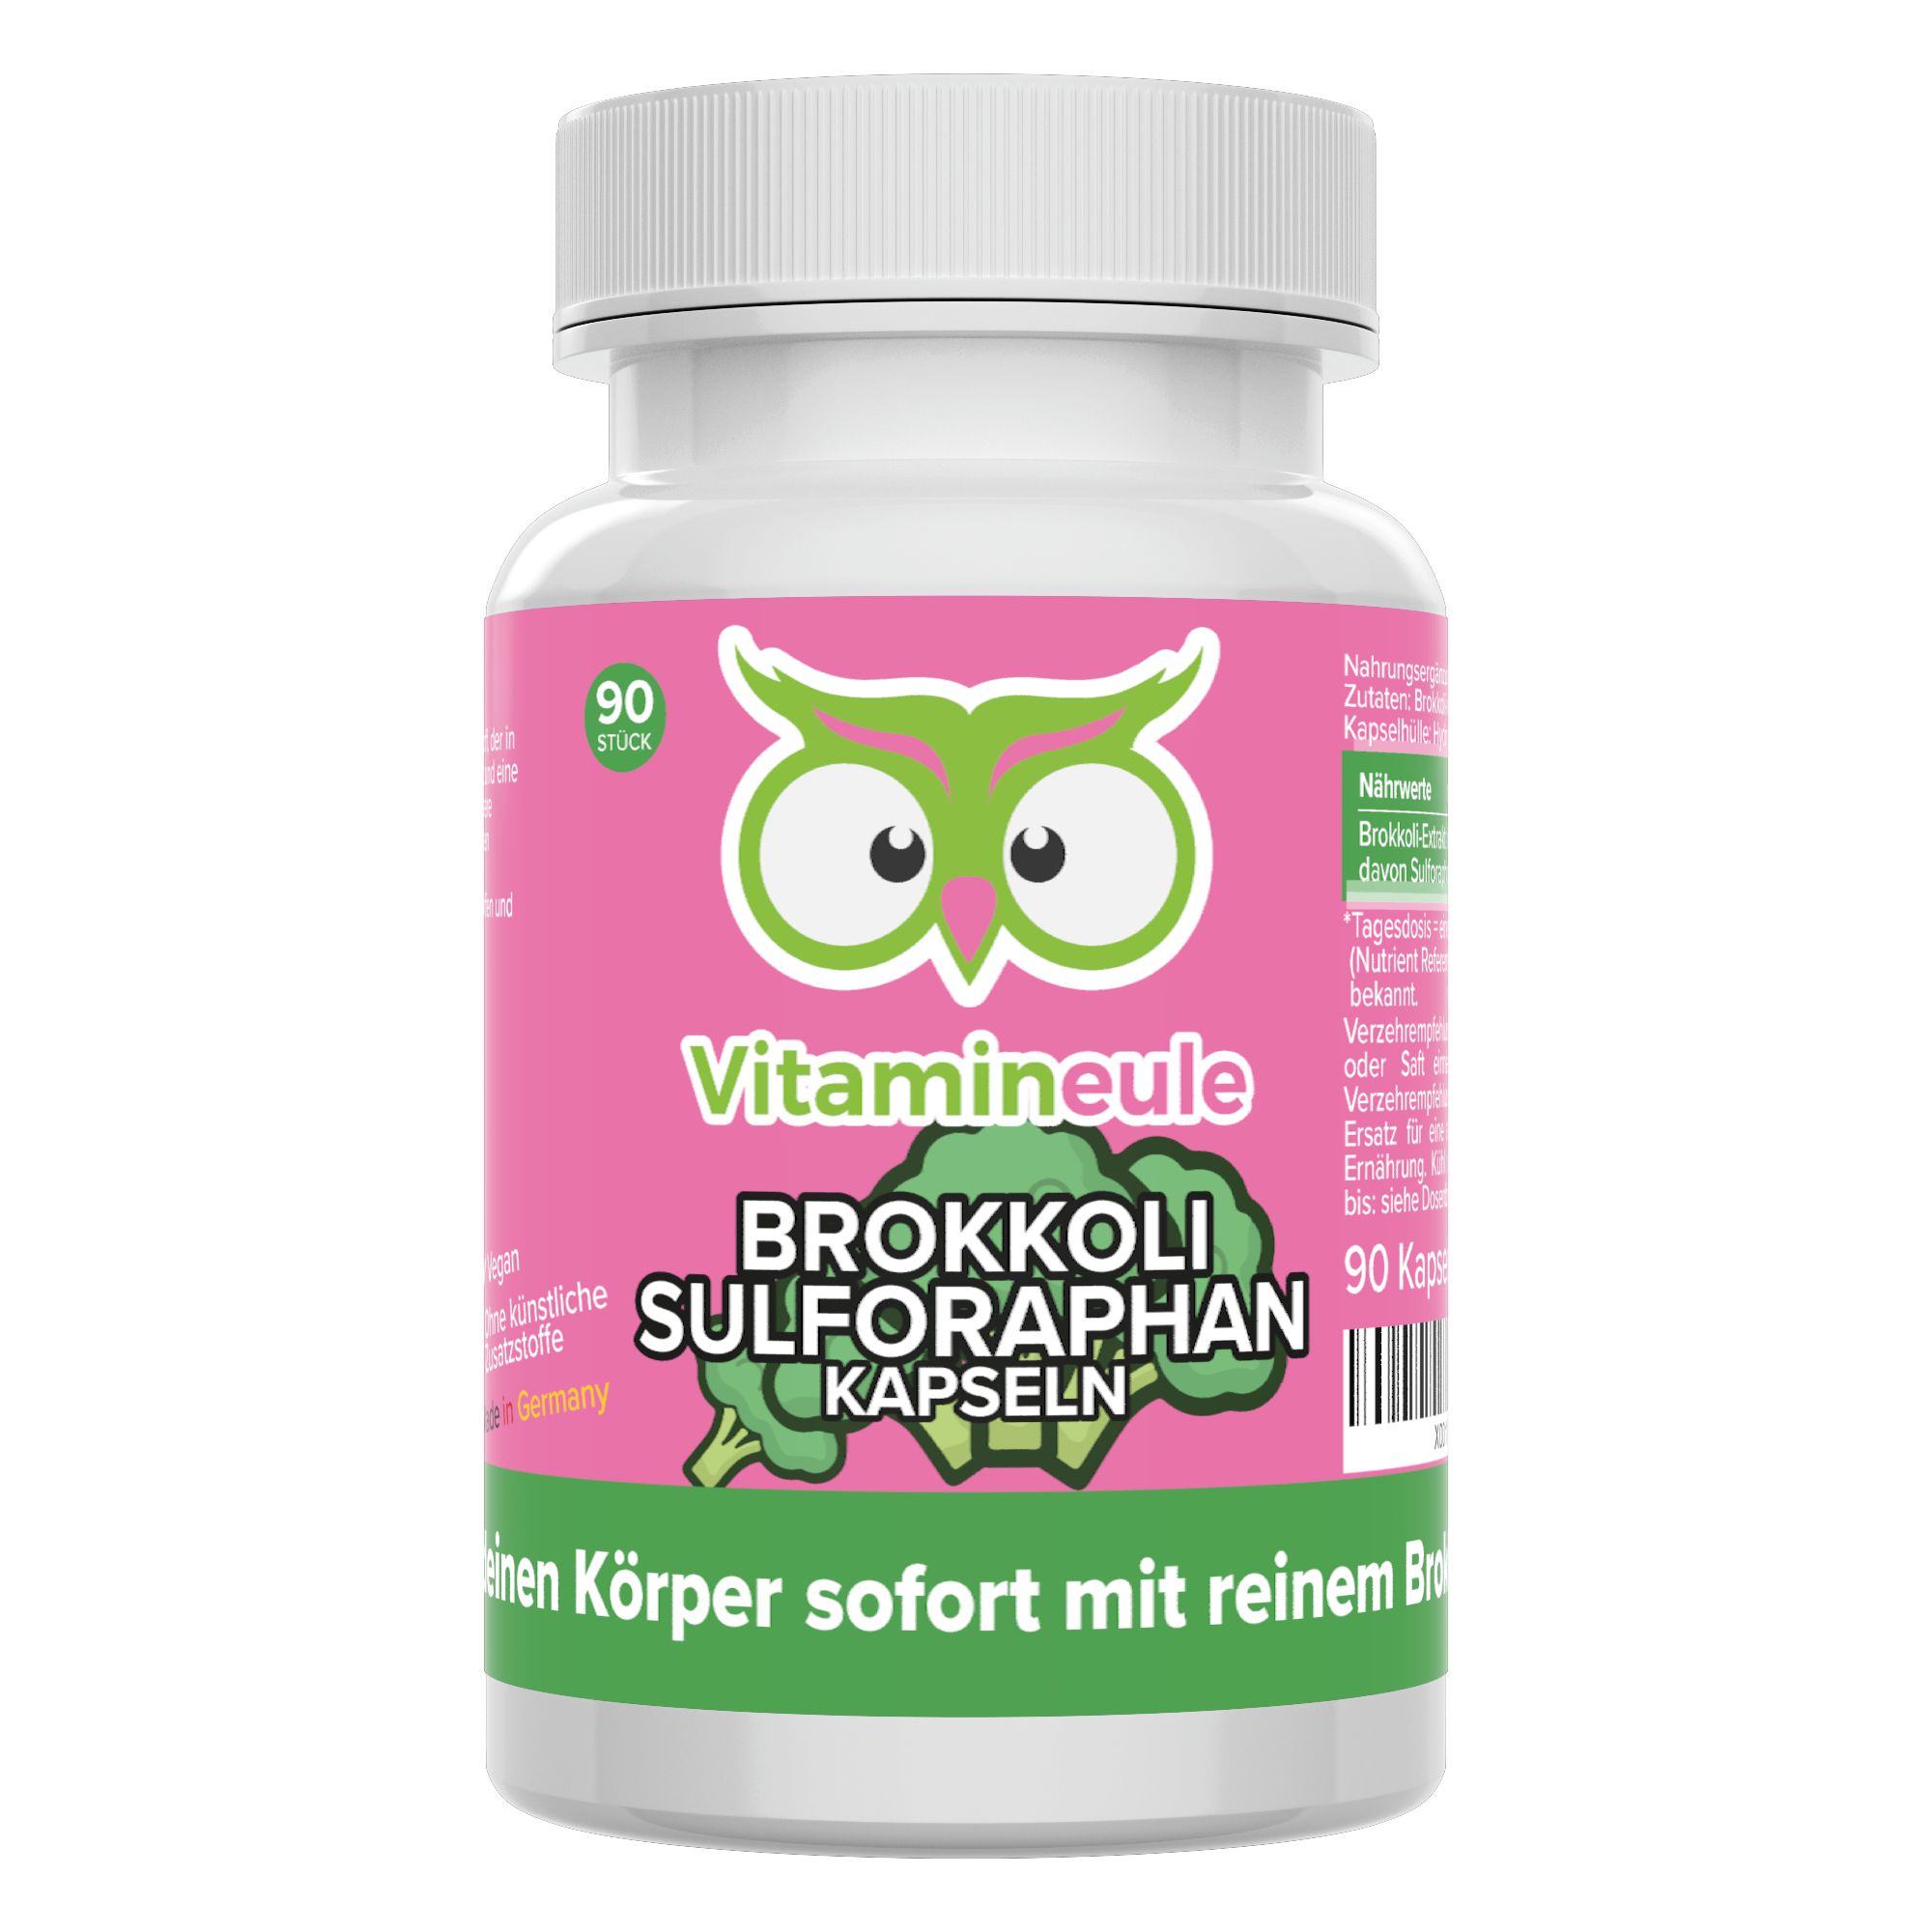 Brokkoli Sulforaphan Kapseln - hochdosiert - Qualität aus Deutschland - ohne Zusätze - Vitamineule®